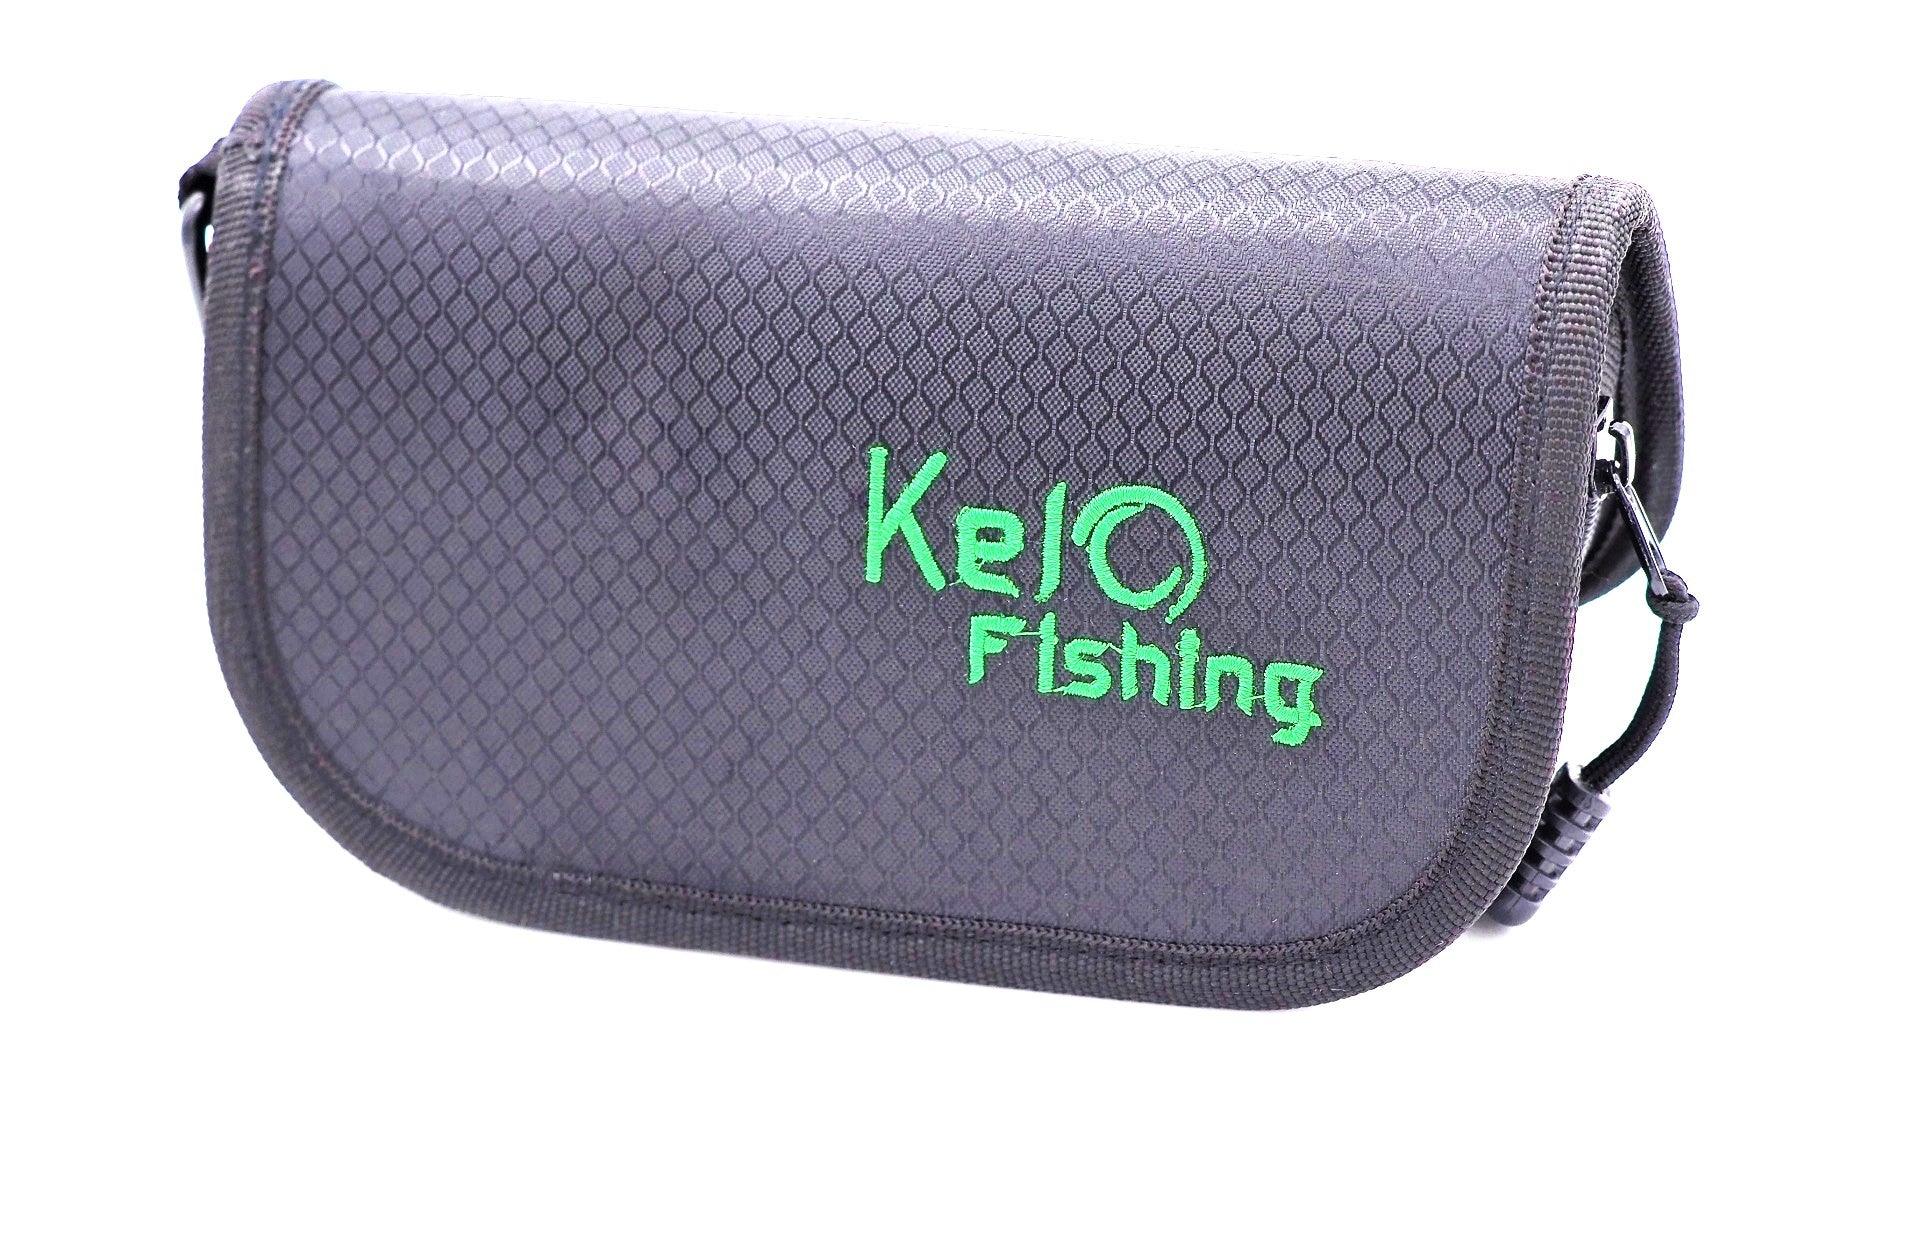 KELO-Fishing Spoon Tasche - SP-Fishing